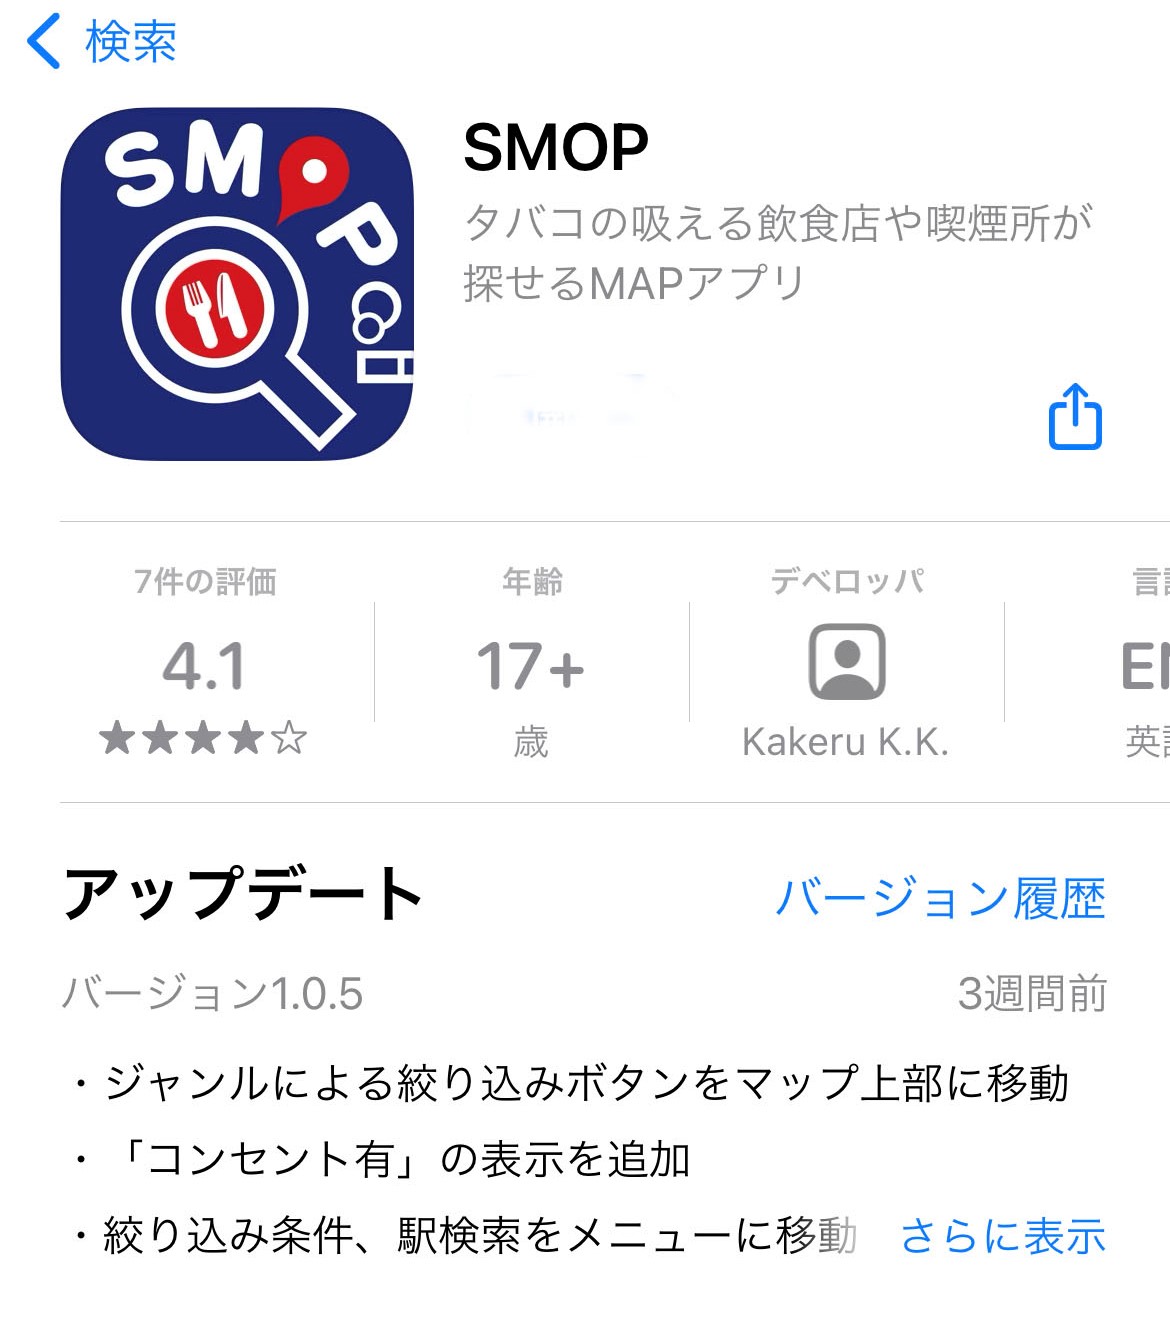 所 アプリ 喫煙 「喫煙所マップ」の活用はマスト!?